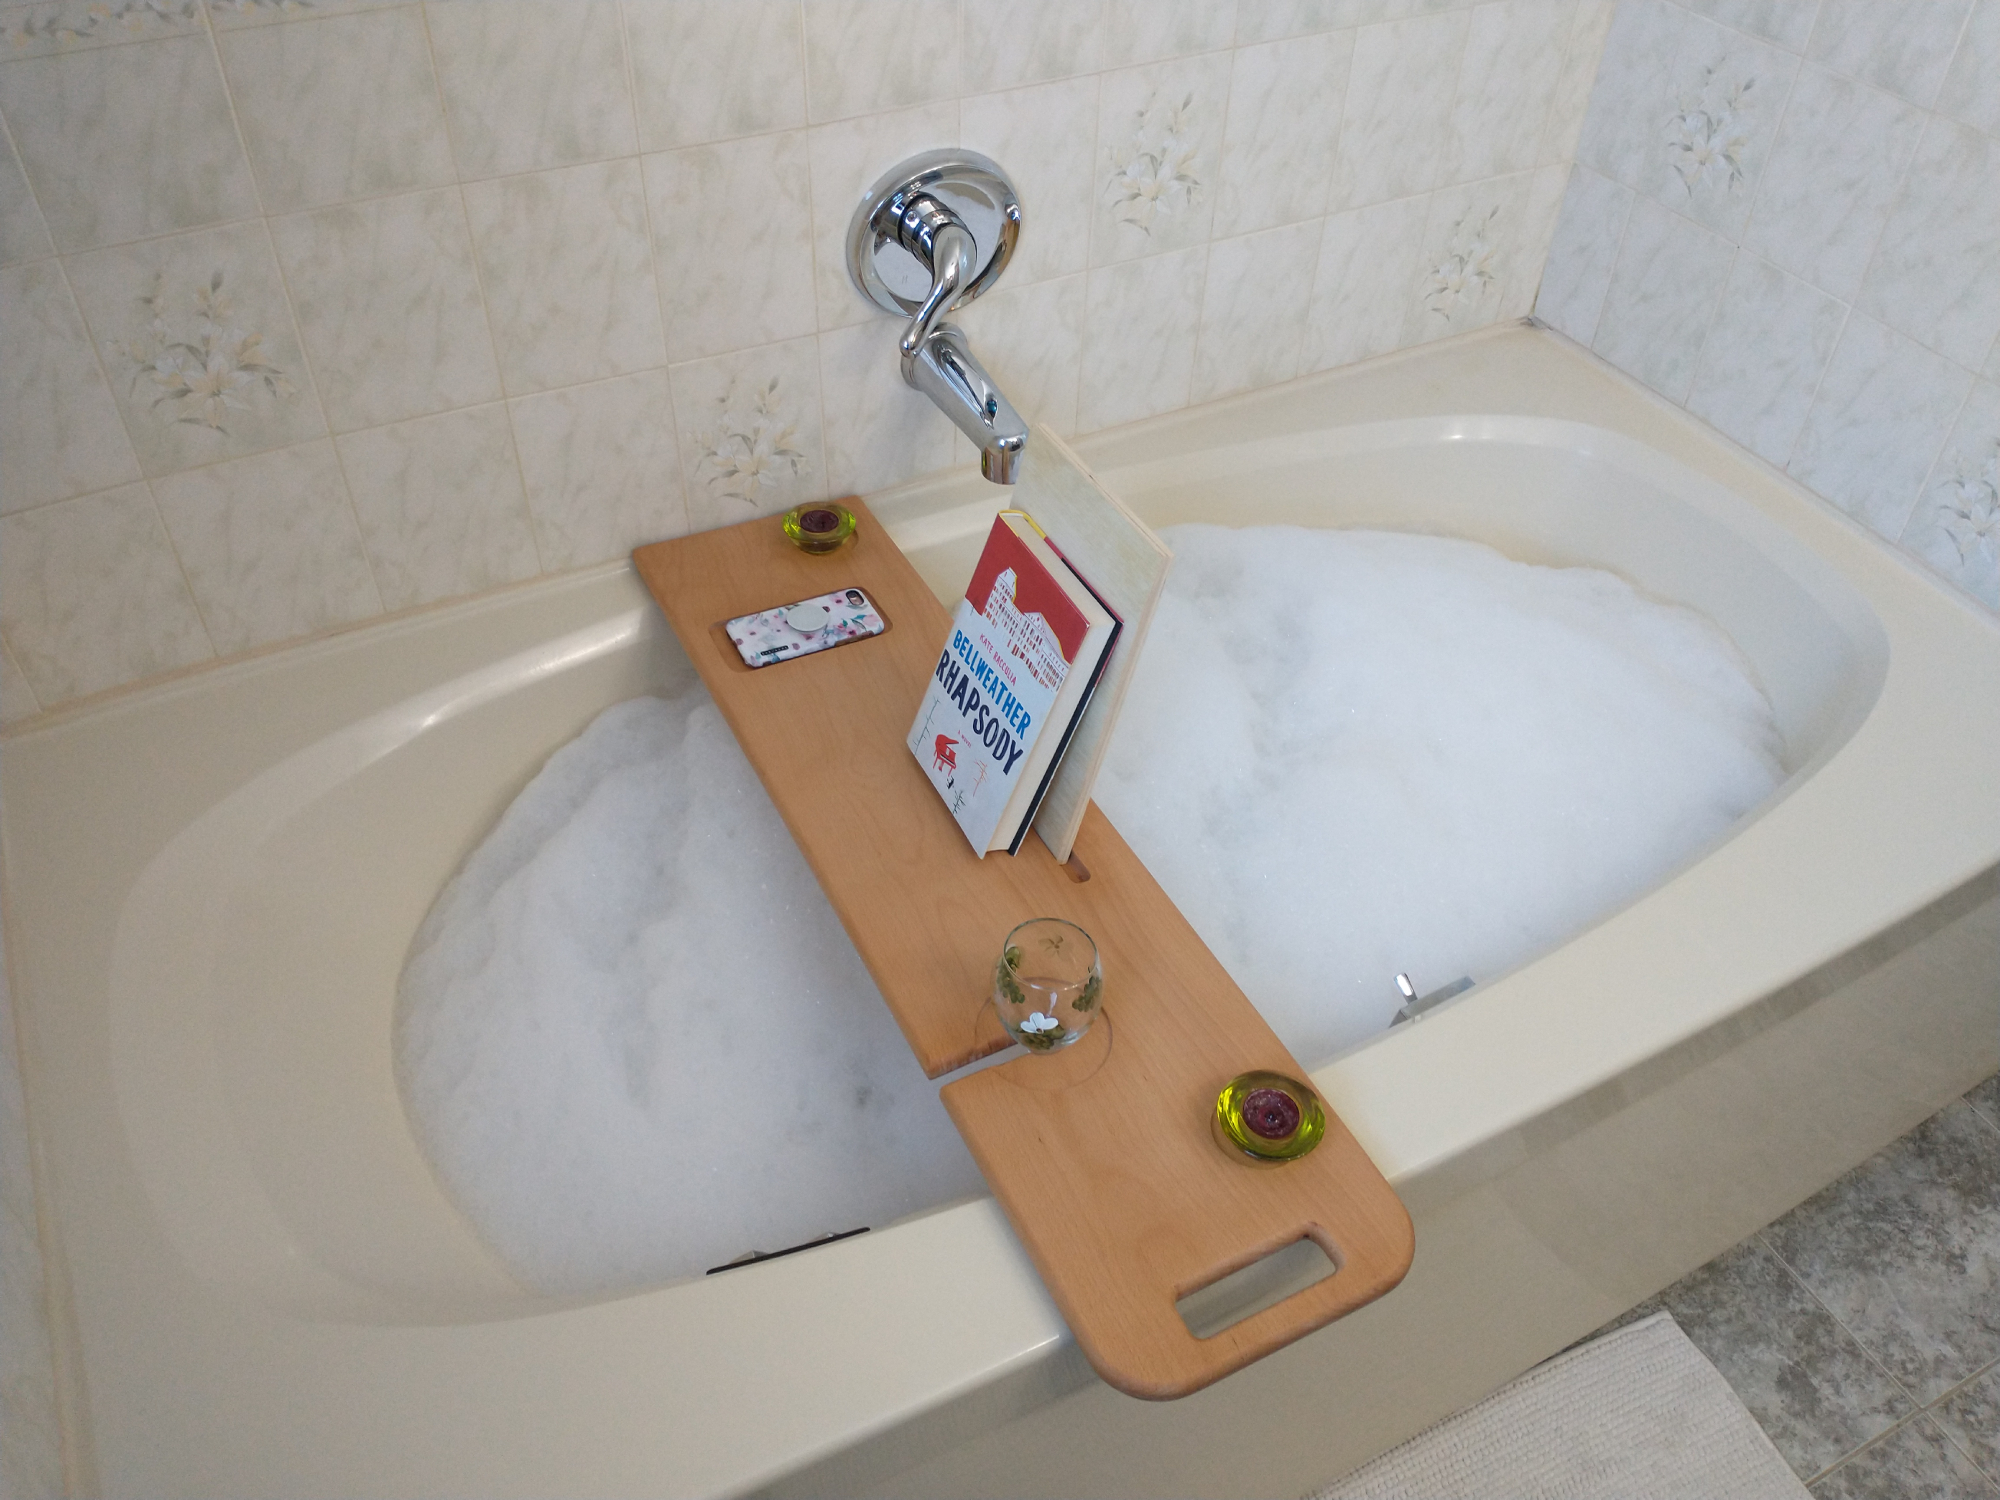 How to build a DIY bathtub tray